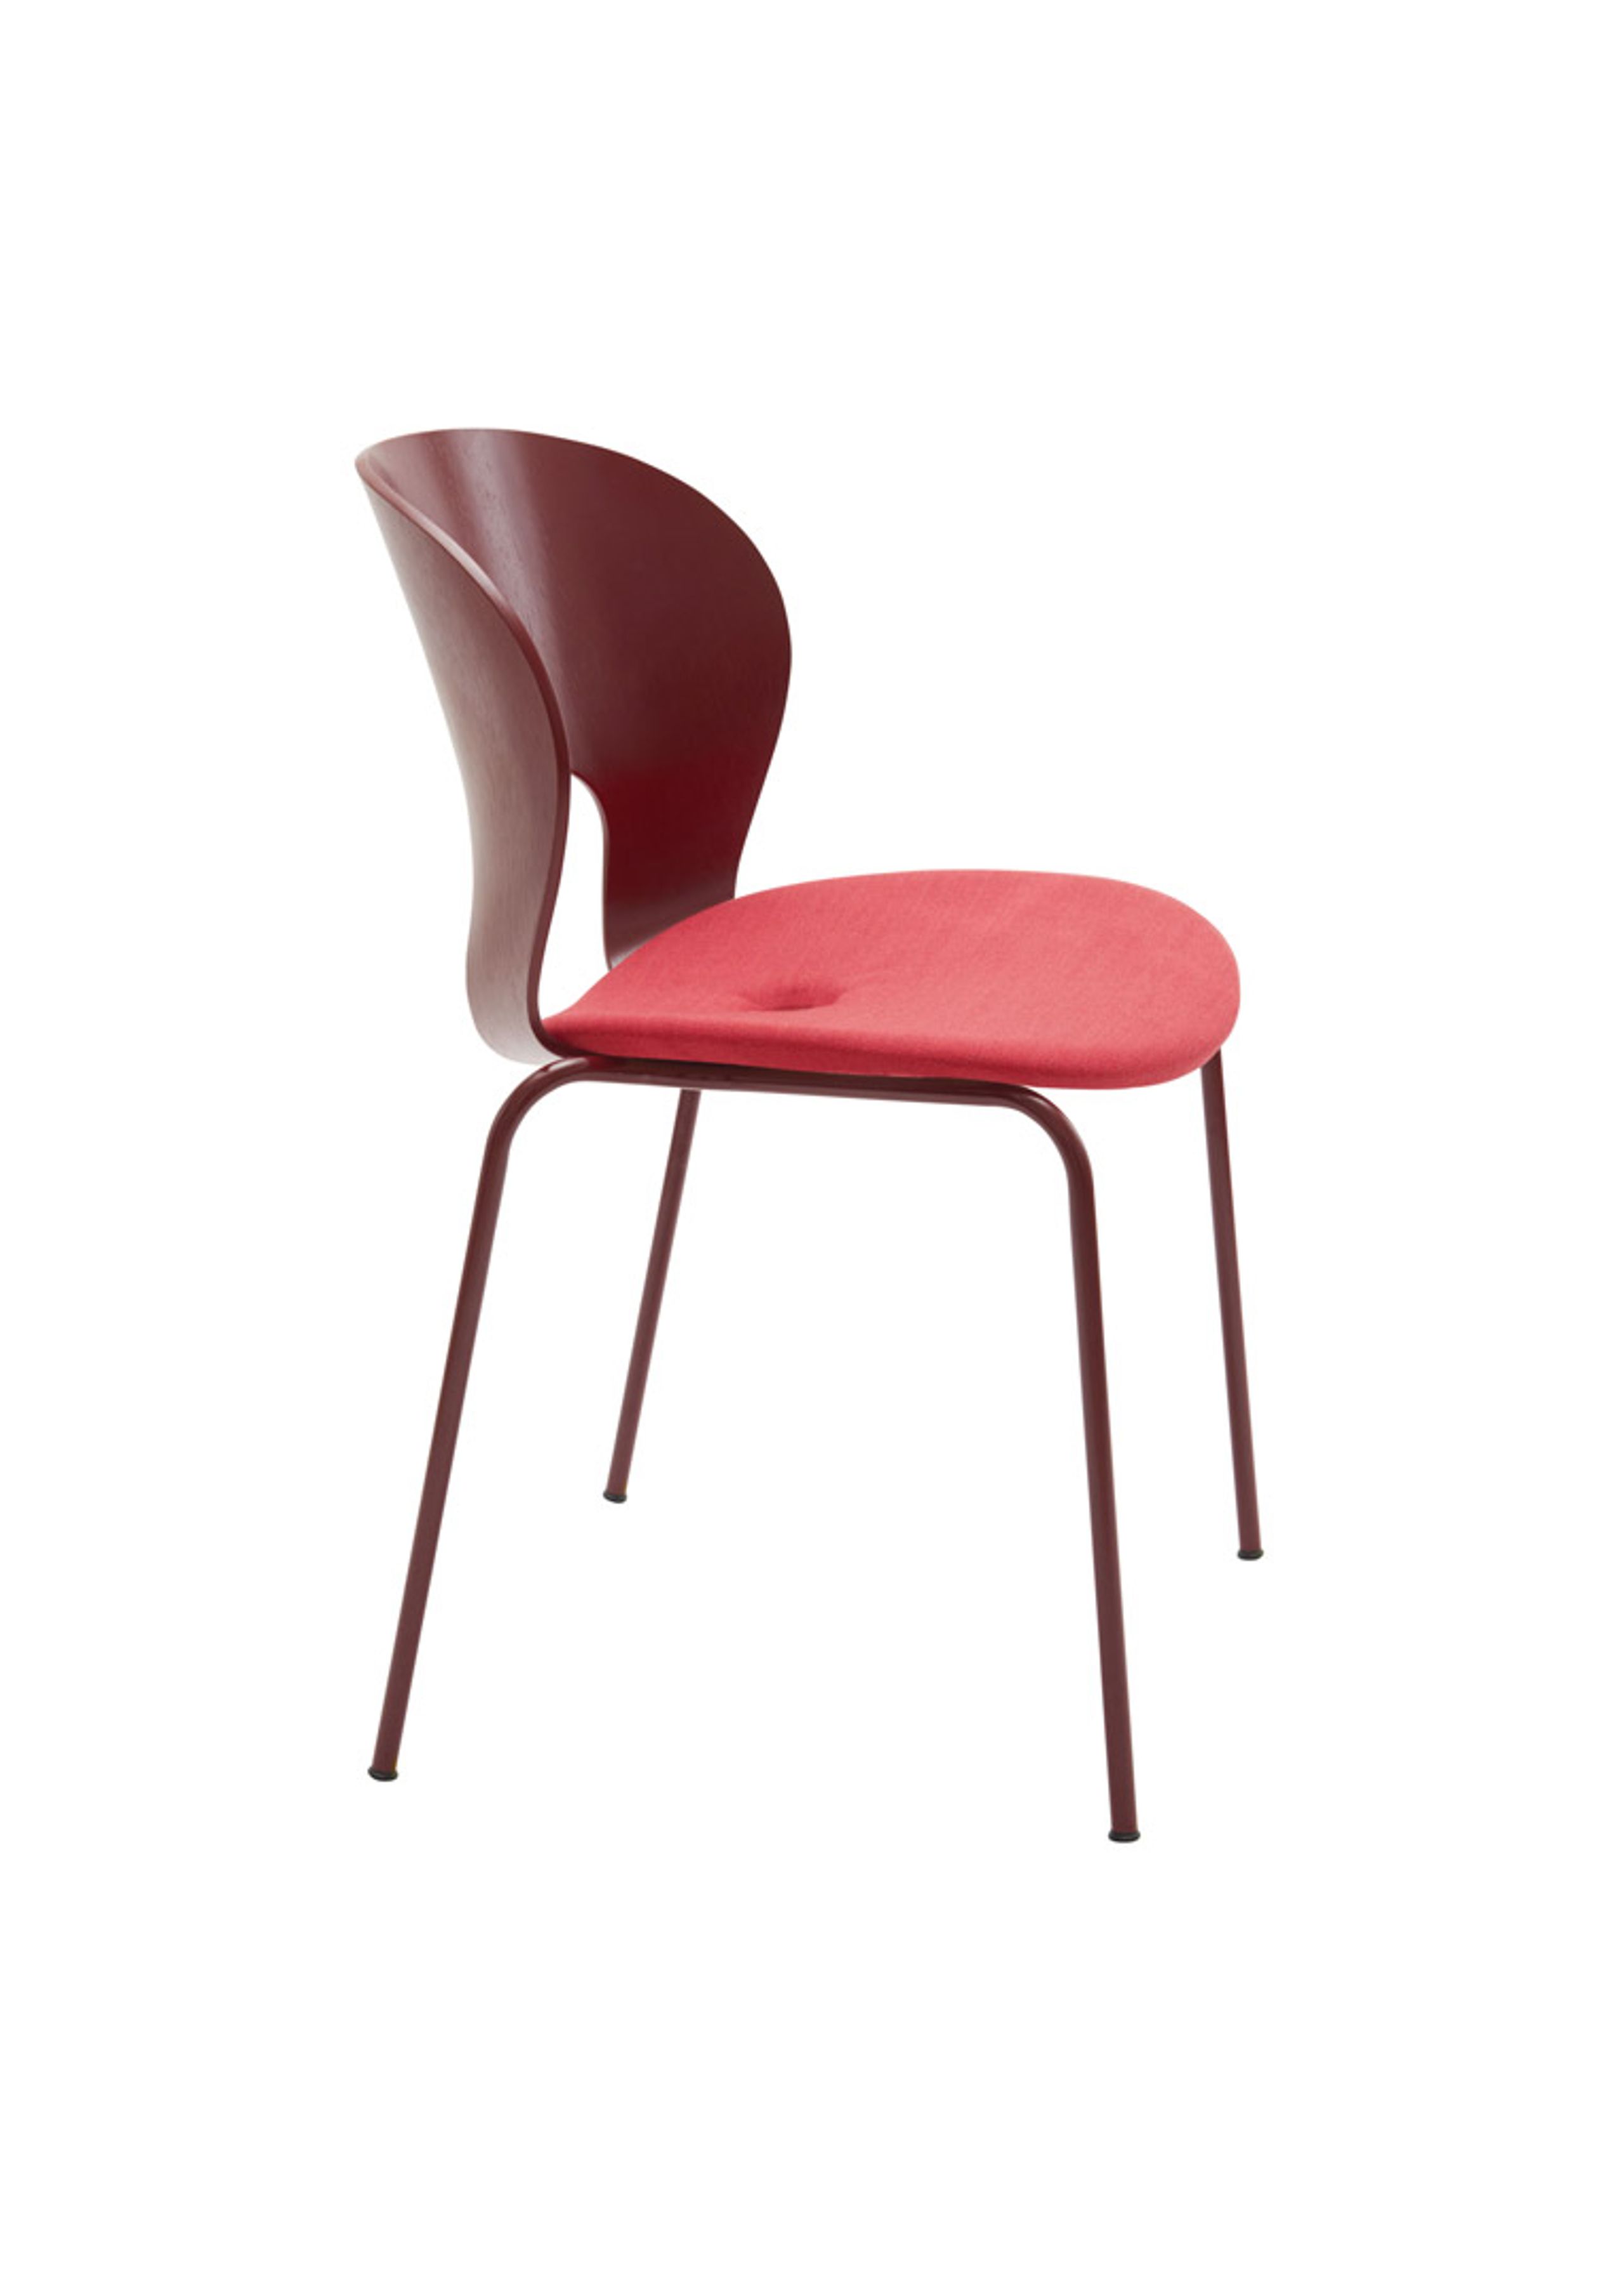 Magnus Olesen - Chaise à manger - Ø Chair - Frame: Bordeaux / Seat: Atlas 661 / Screw: Bordeaux / Back: Bordeaux